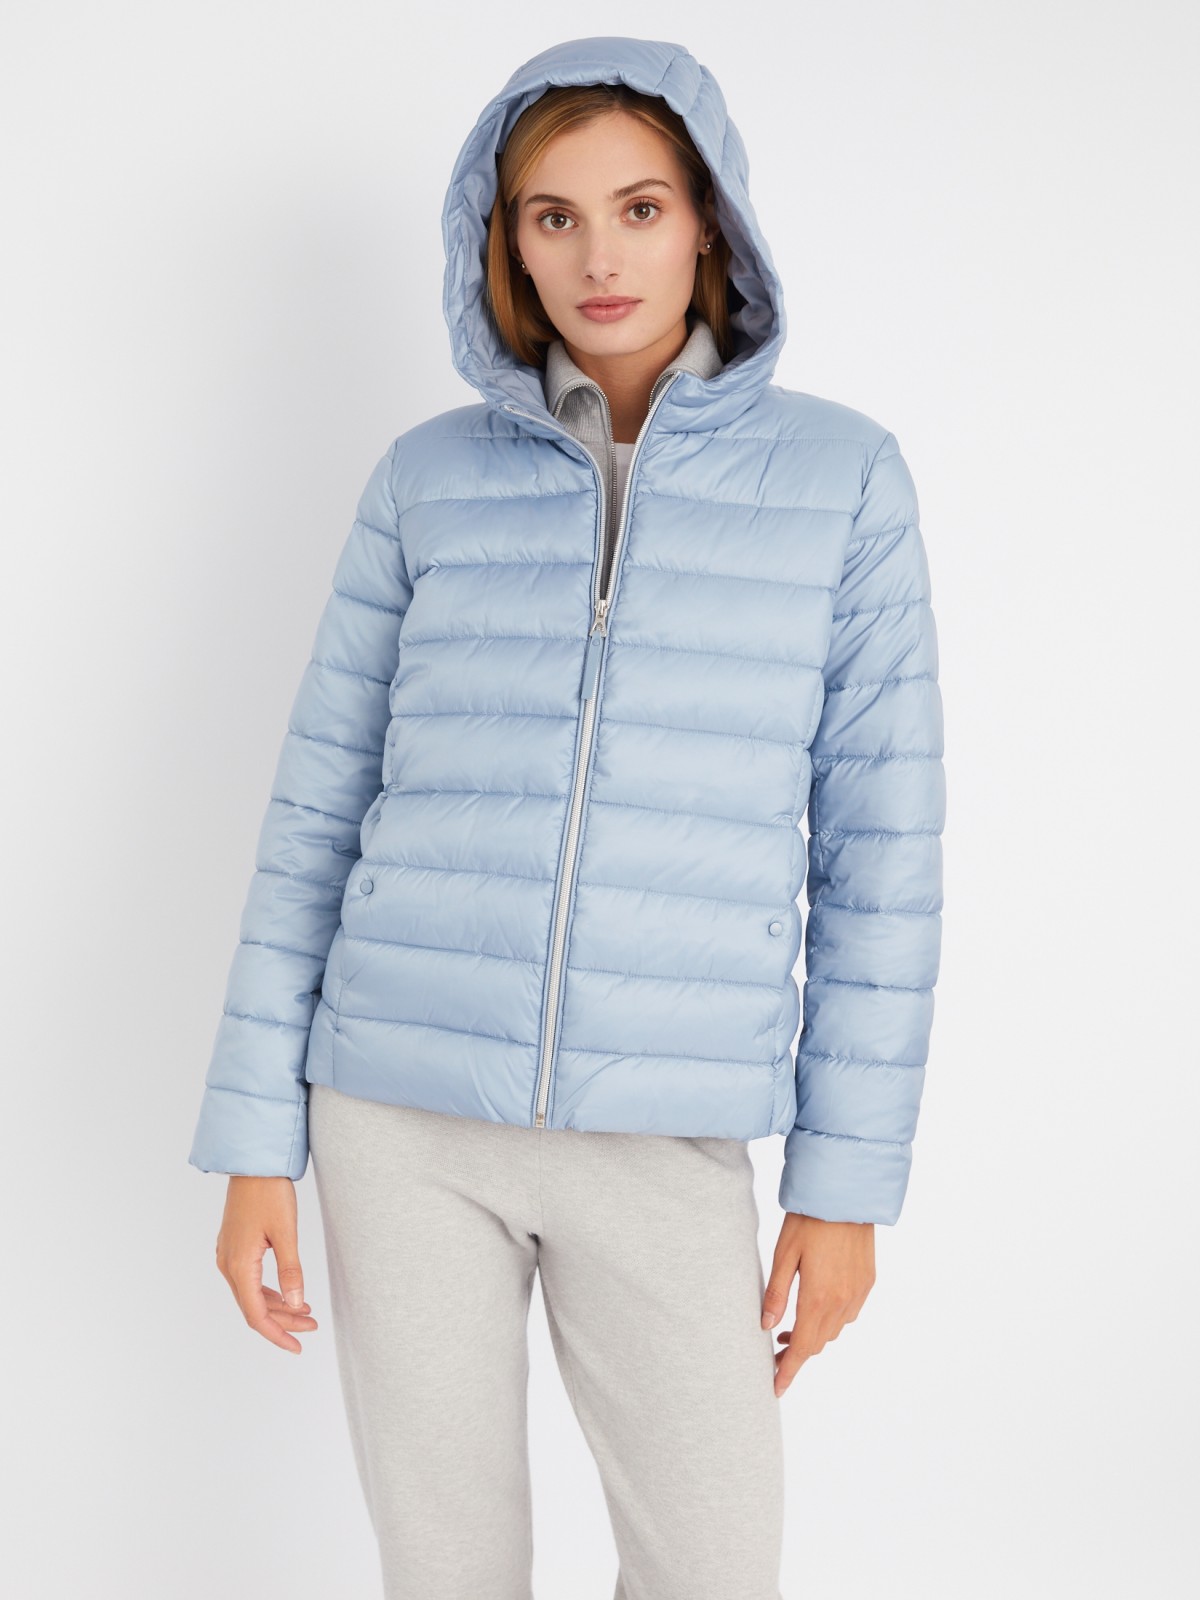 Утеплённая стёганая куртка укороченного фасона с капюшоном zolla 023335112224, цвет голубой, размер S - фото 4